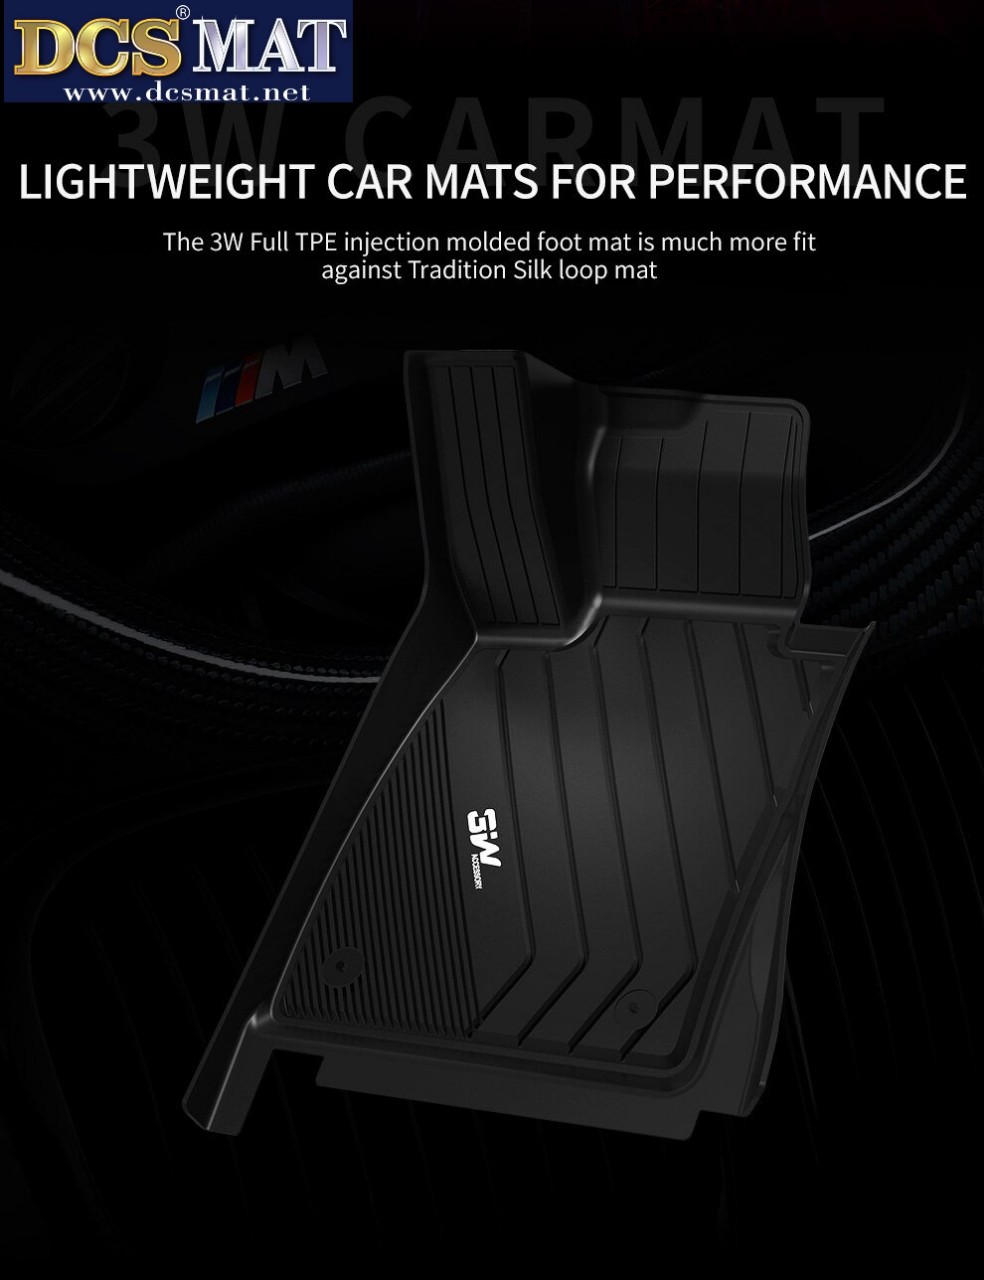 Thảm lót sàn cho xe BMW X7 2018- nay thương hiệu DCSMAT